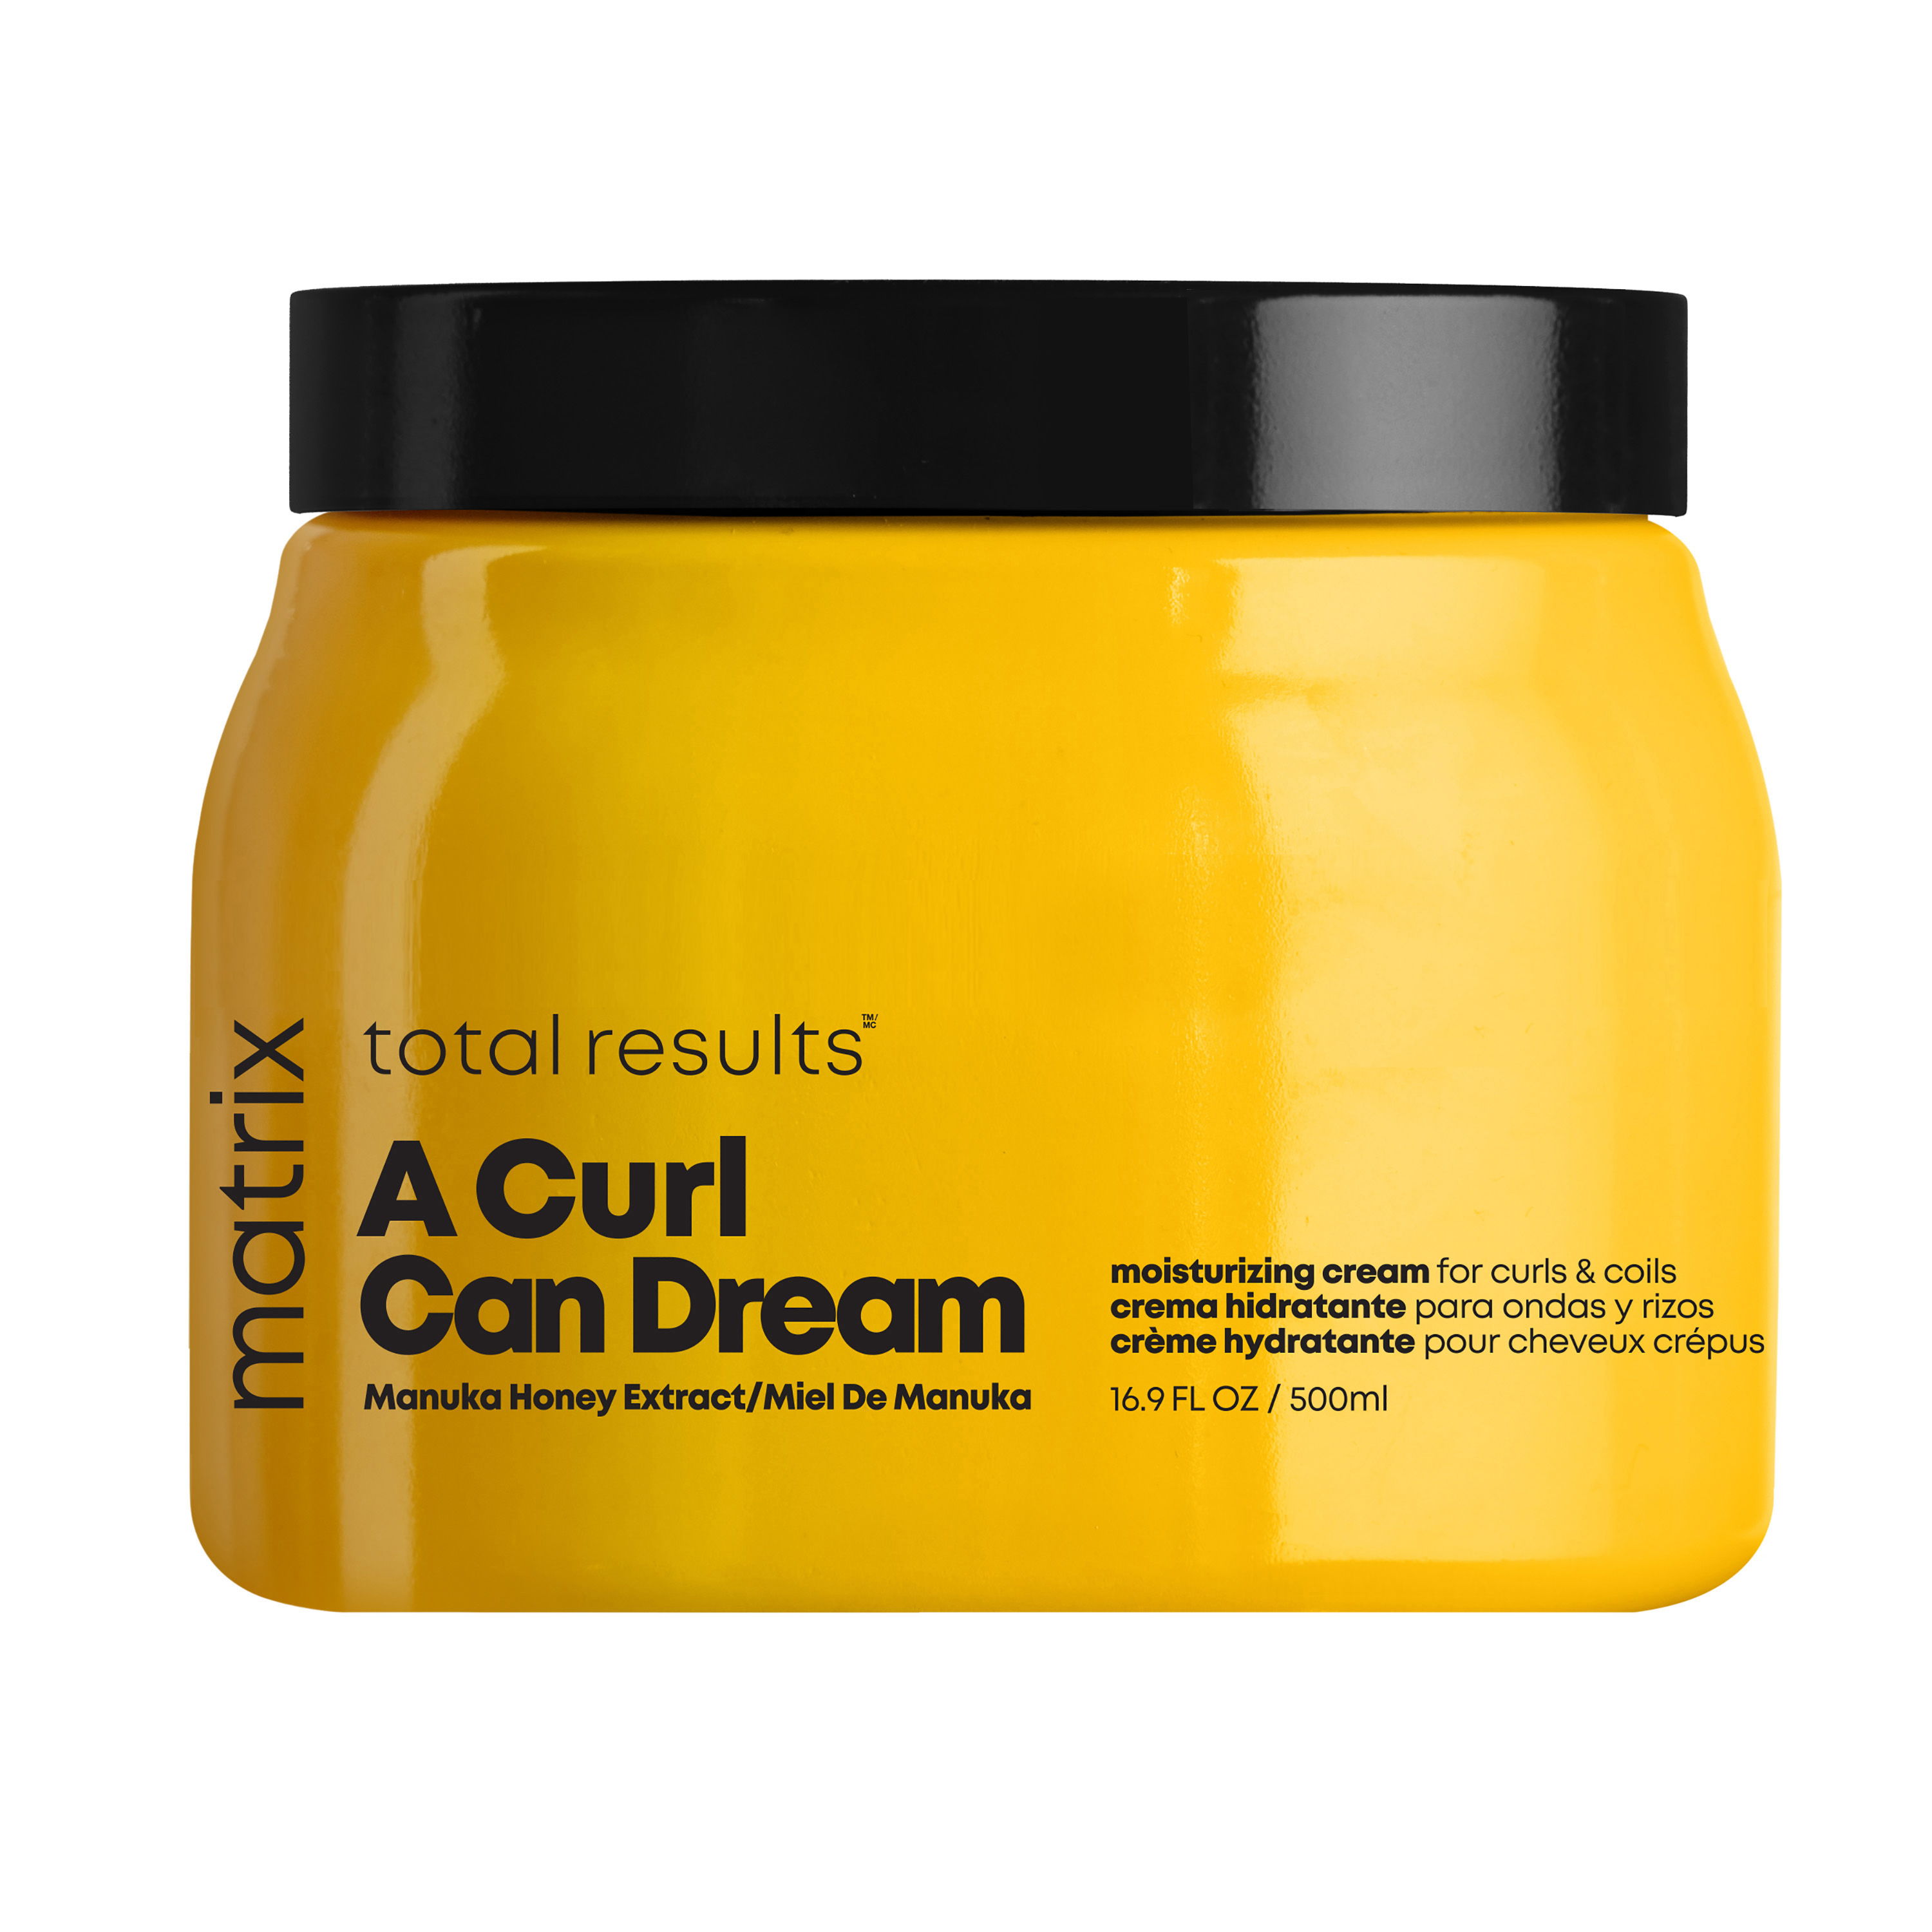 A Curl Can Dream Moisturizing Cream for curls & coils €34,50* - 500ml